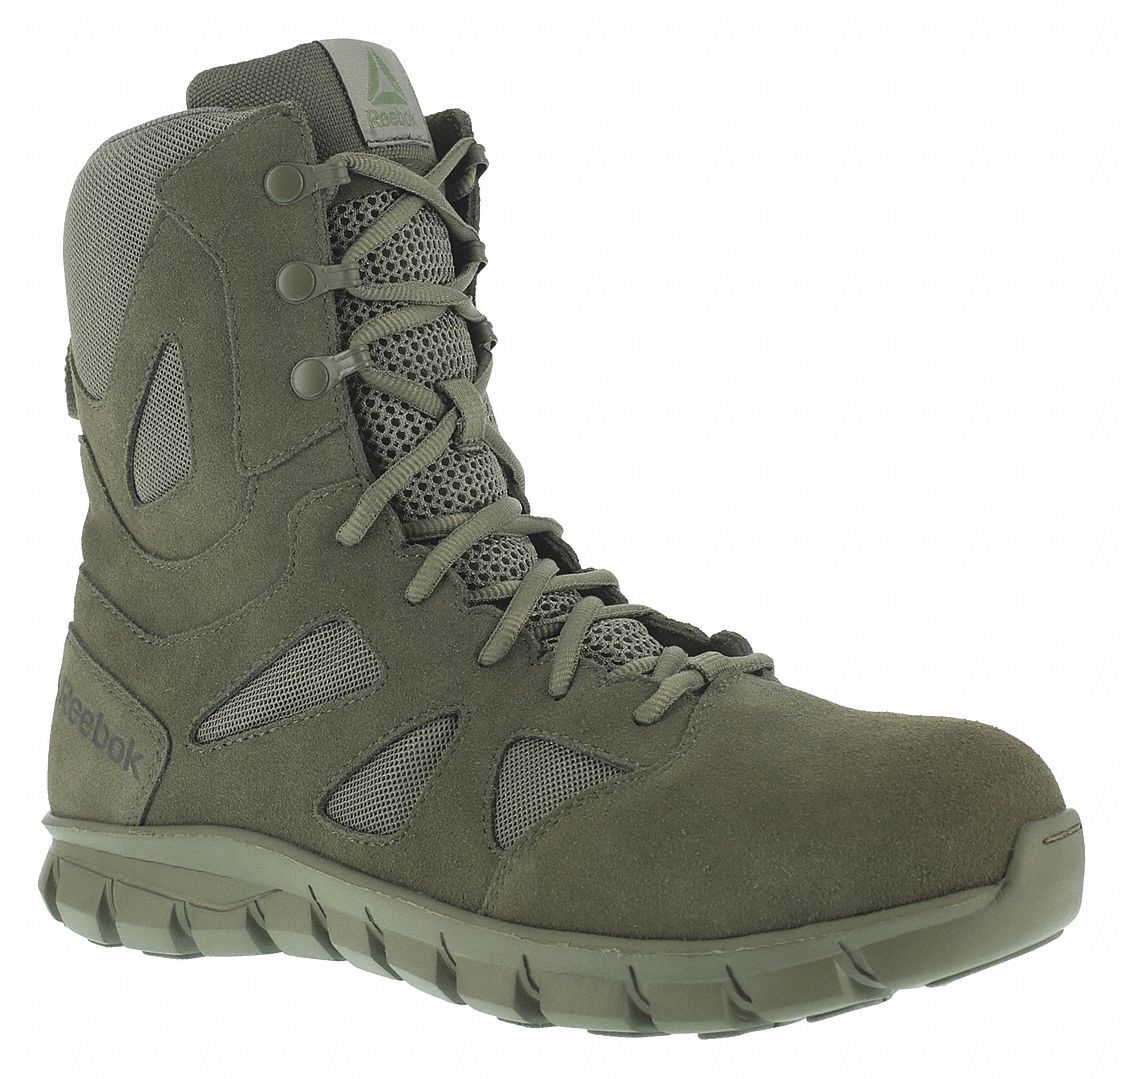 REEBOK, Plain, Green, Tactical Boots - 54JD12|RB8882 - Grainger